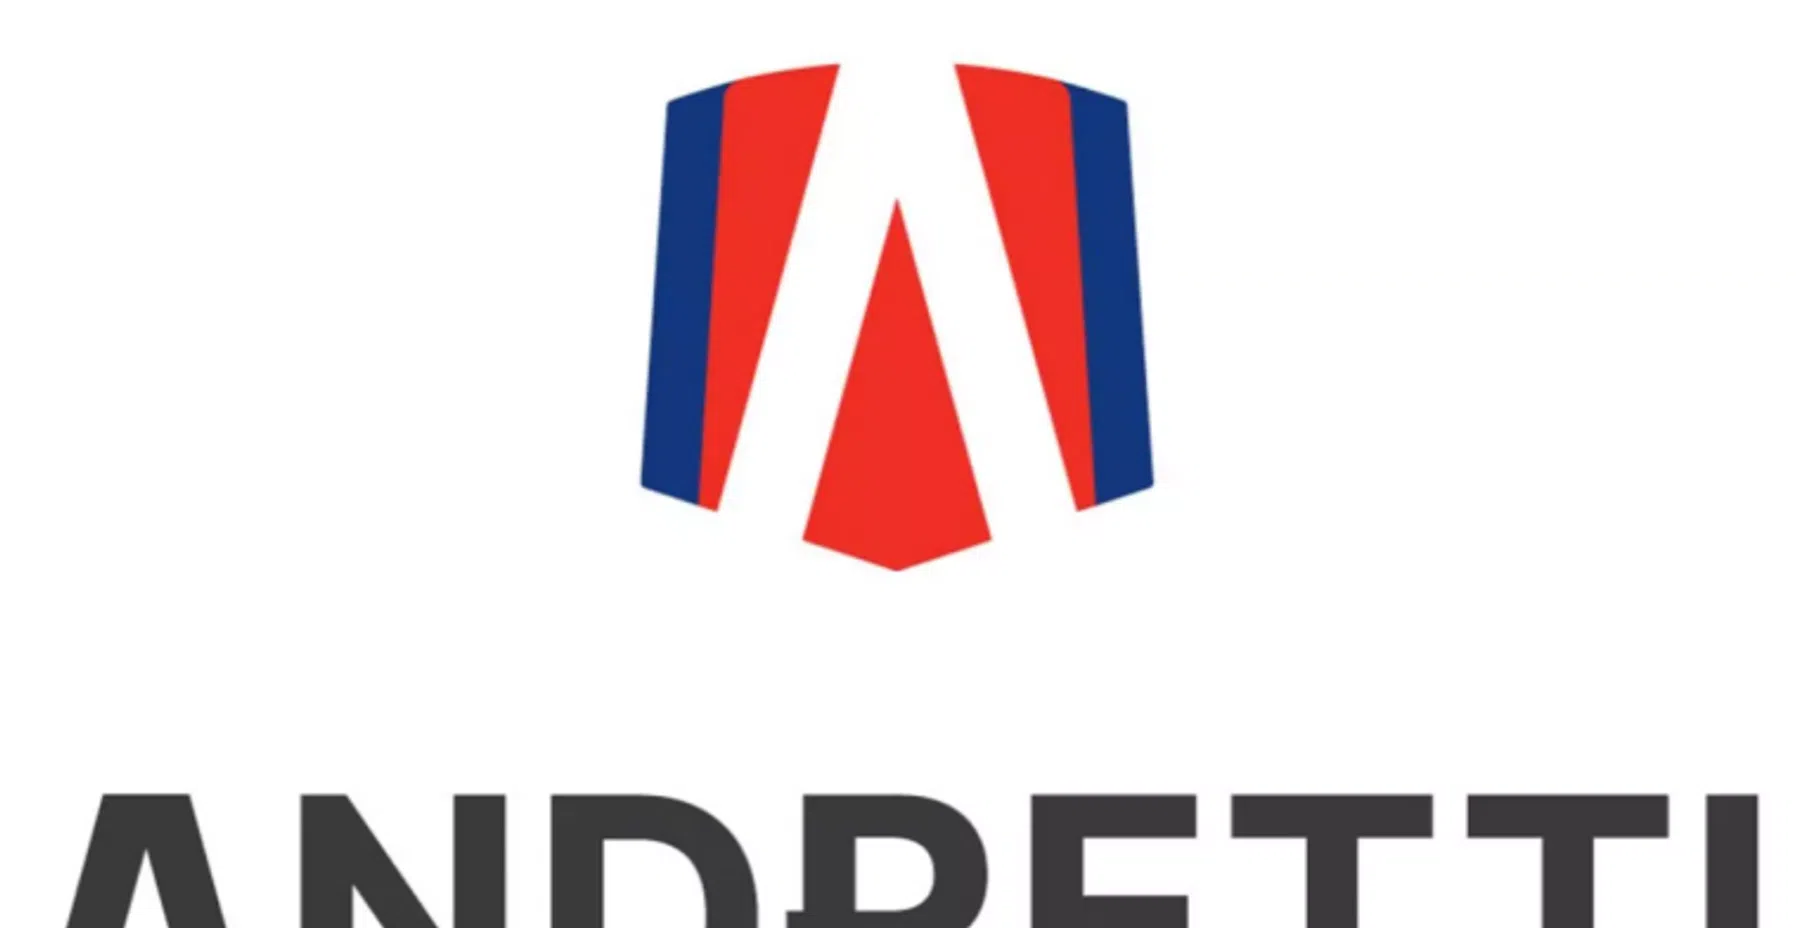 Andretti Global reageert: 'Ons werk gaat door'